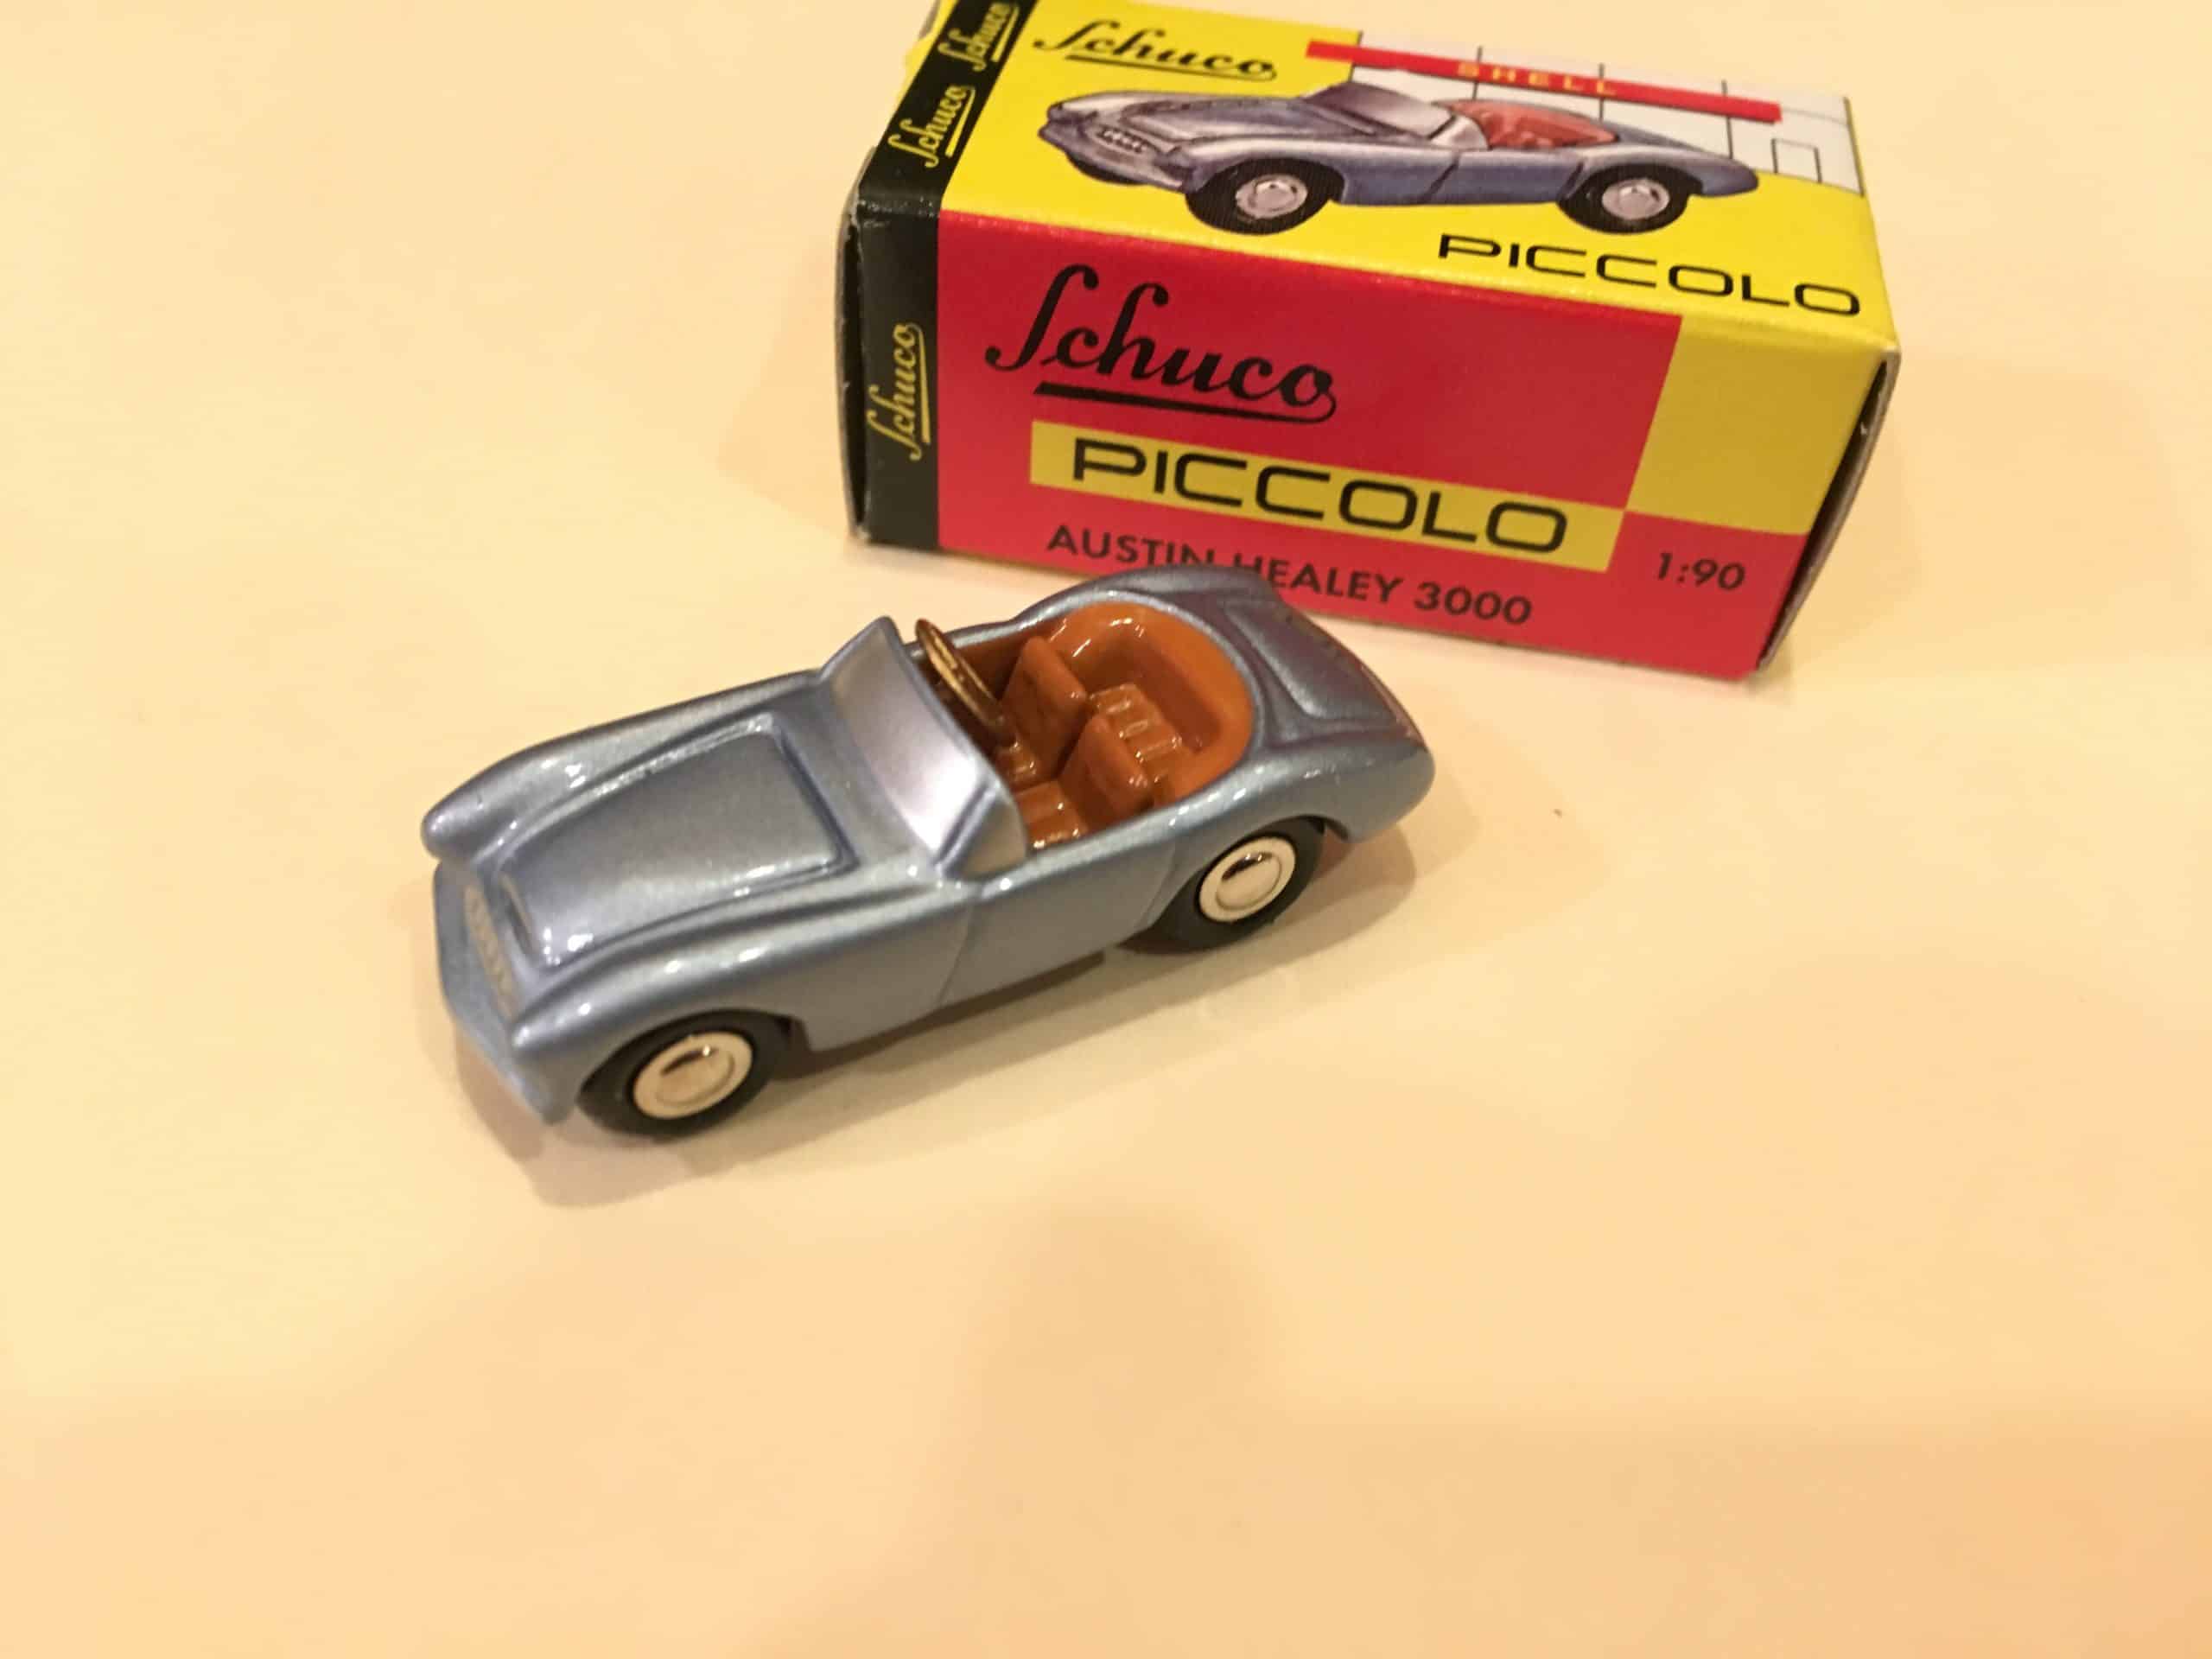 1/90 SCHUCO PICCOLO LIMITED MINI DIECAST CAR MODEL